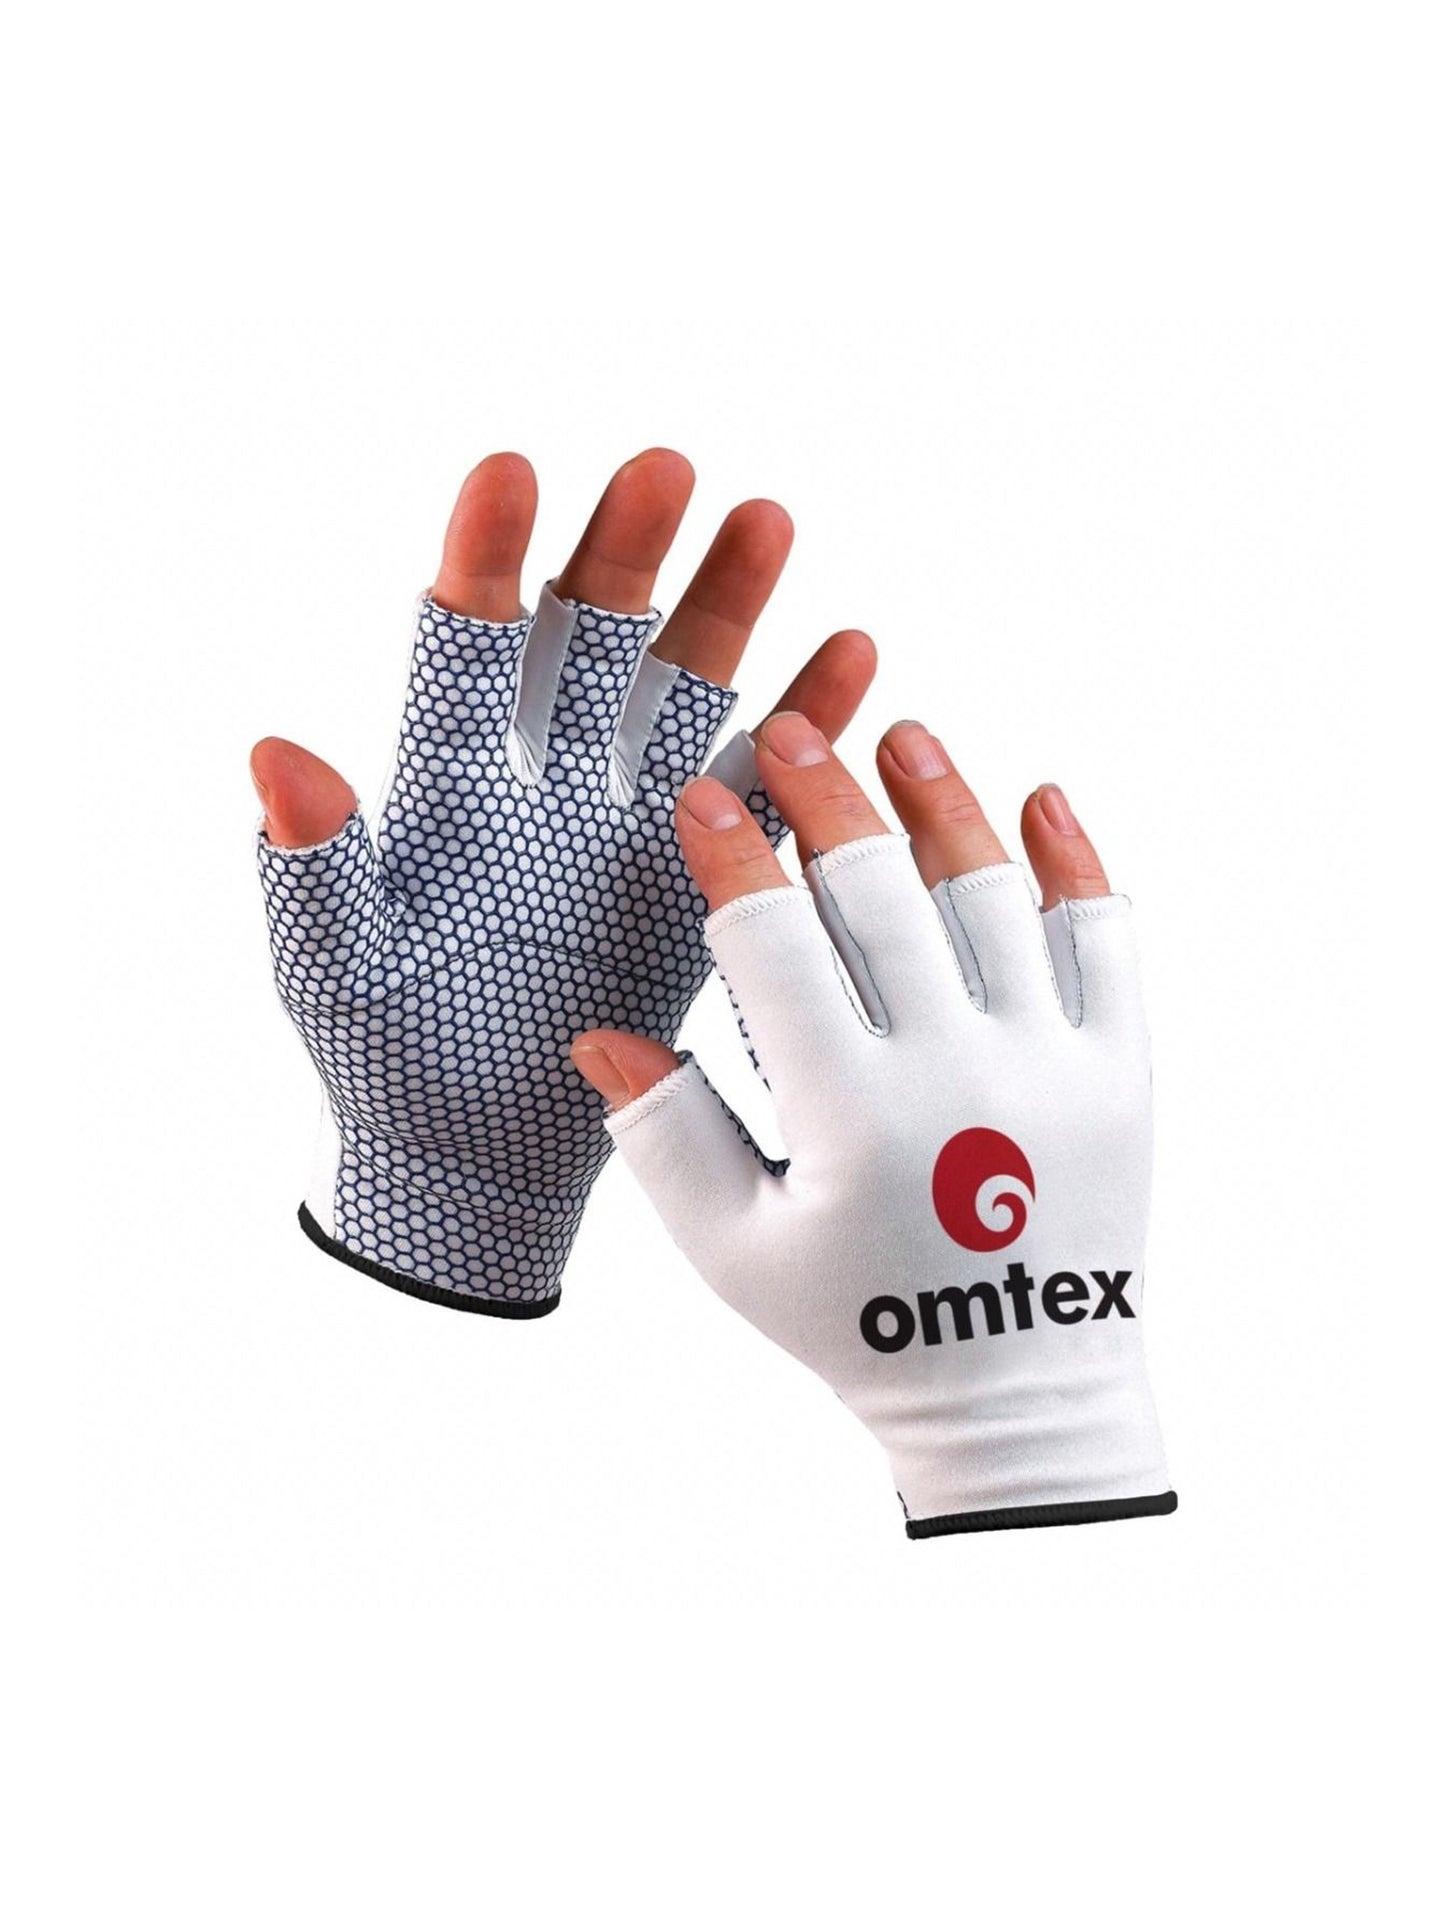 Omtex Fielding Gloves